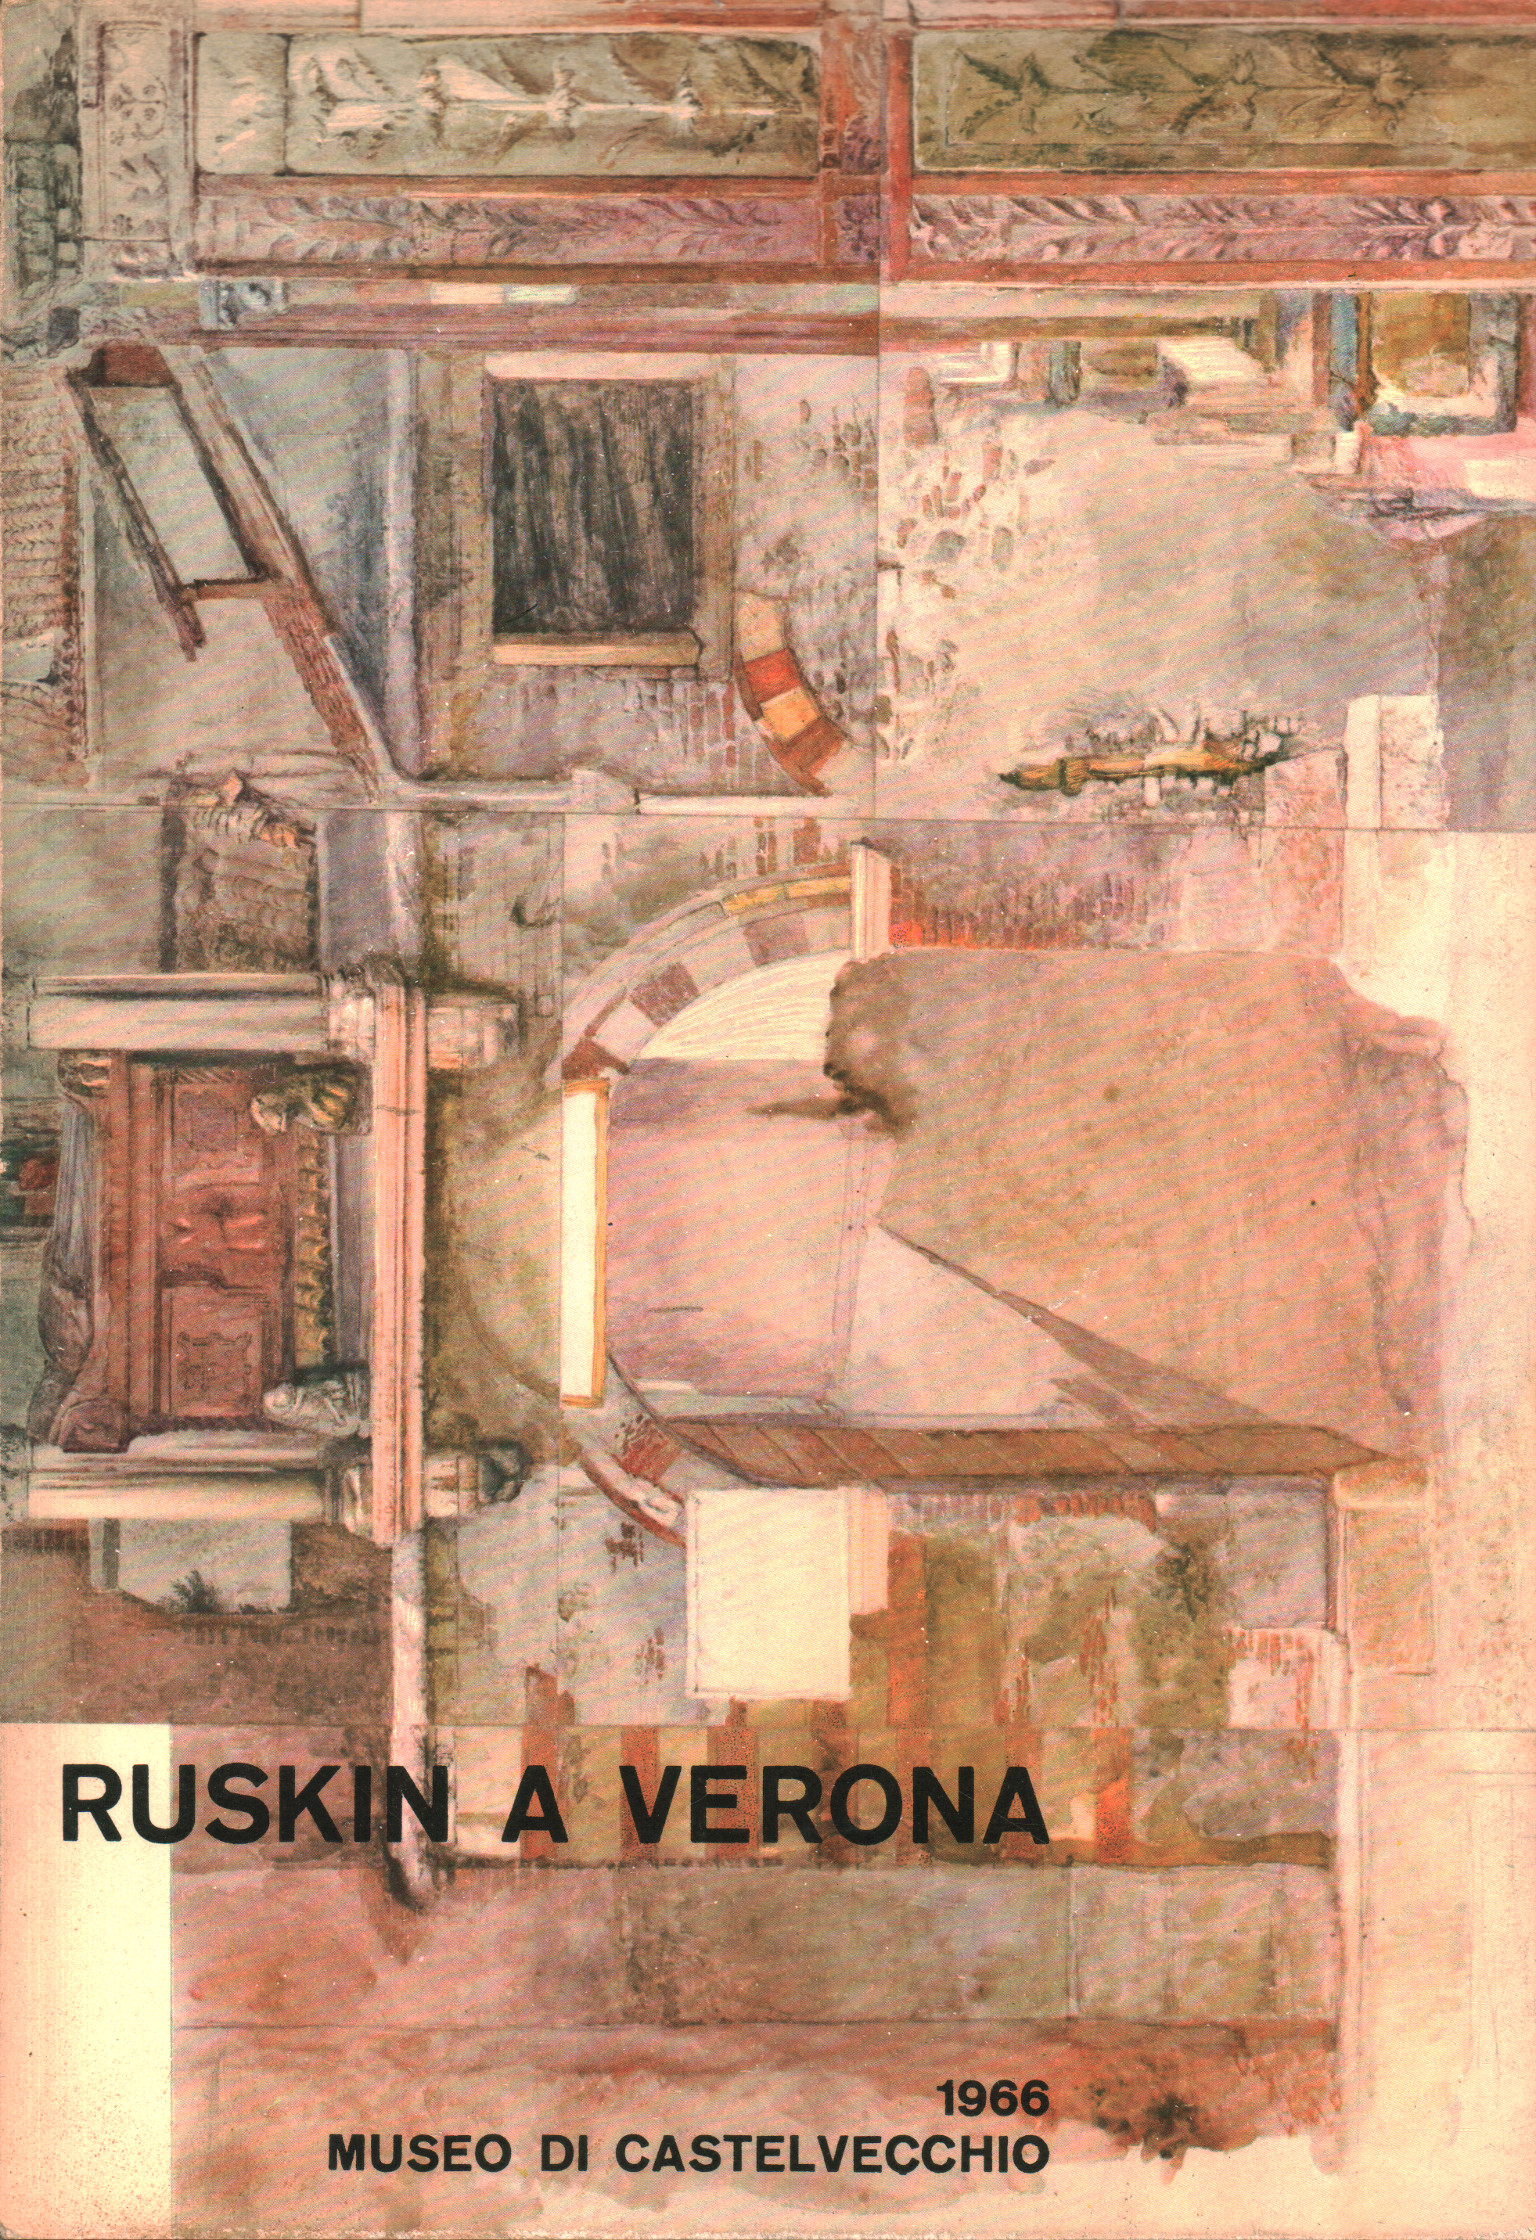 Ruskin a Verona, Terence Mullaly